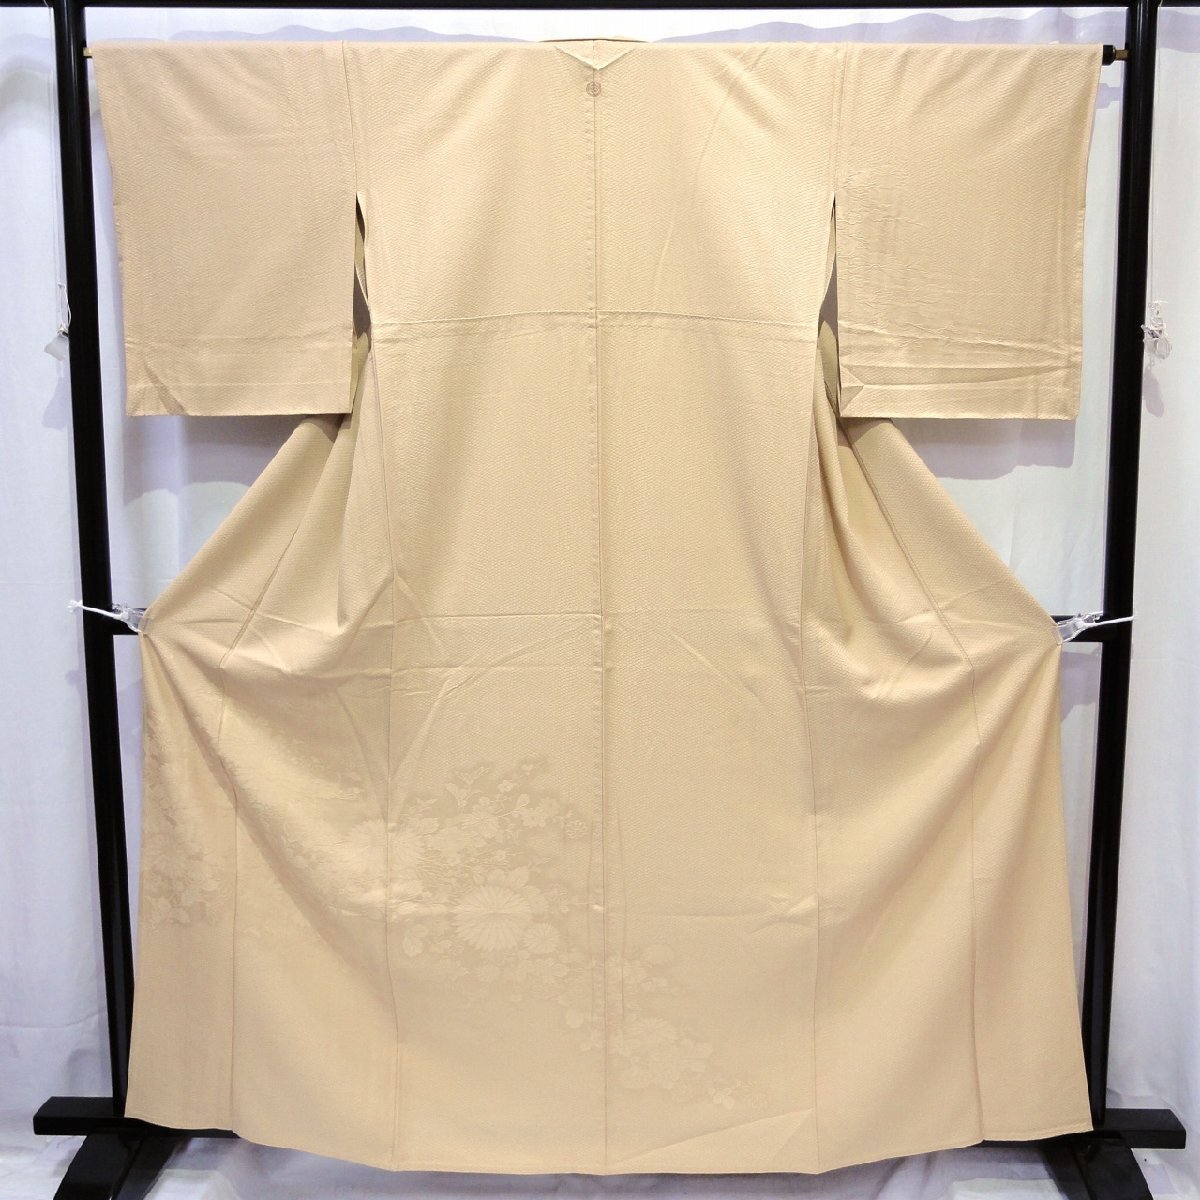 正絹・色無地・着物・一つ紋・単衣・No.200701-0428・梱包サイズ60